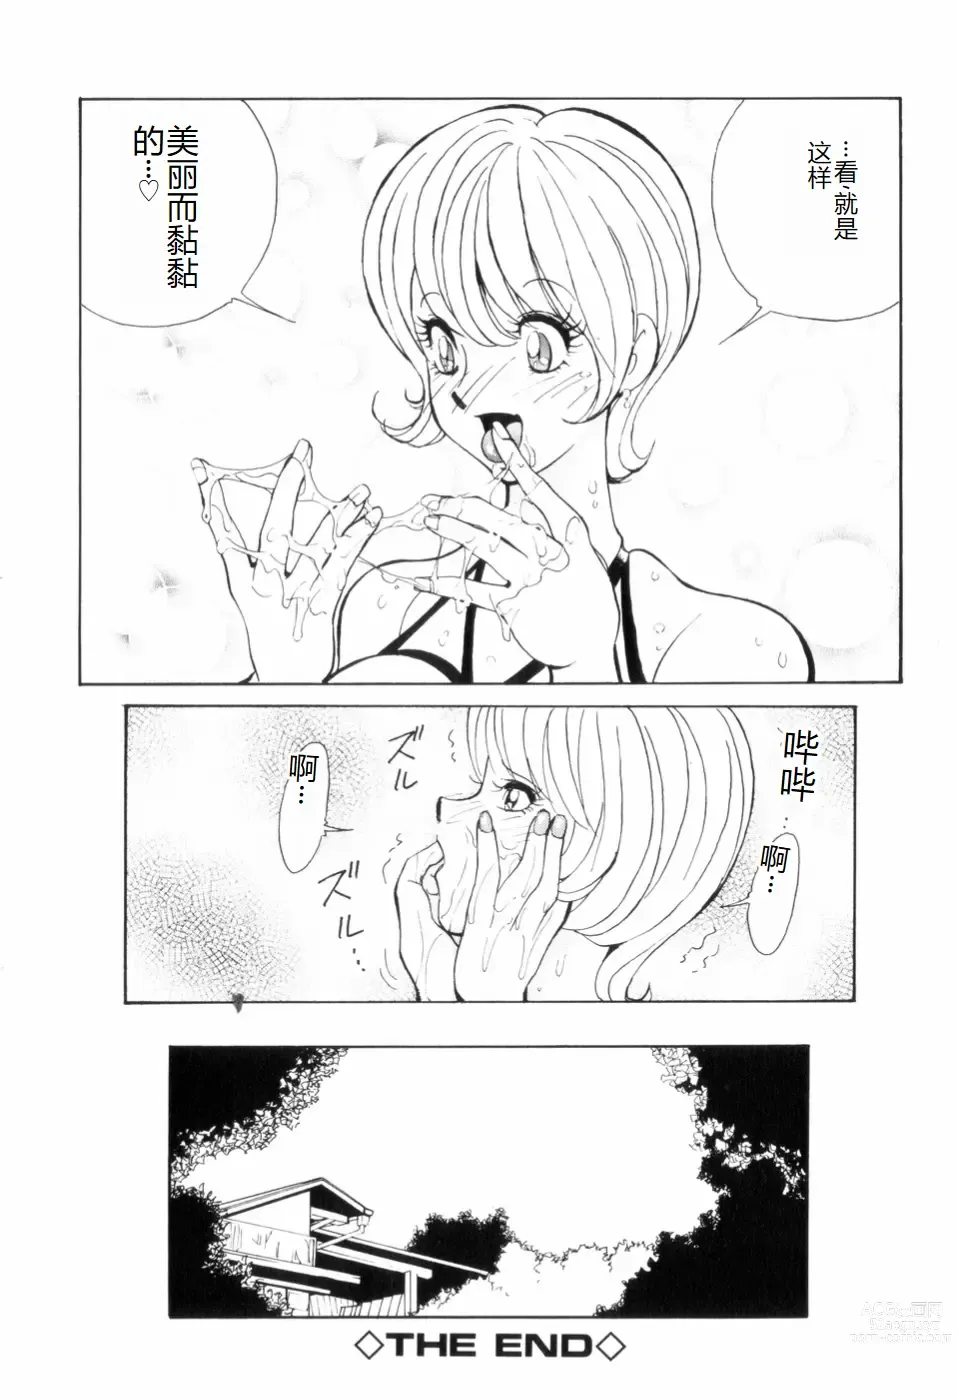 Page 166 of manga Hakujuu no Hasha